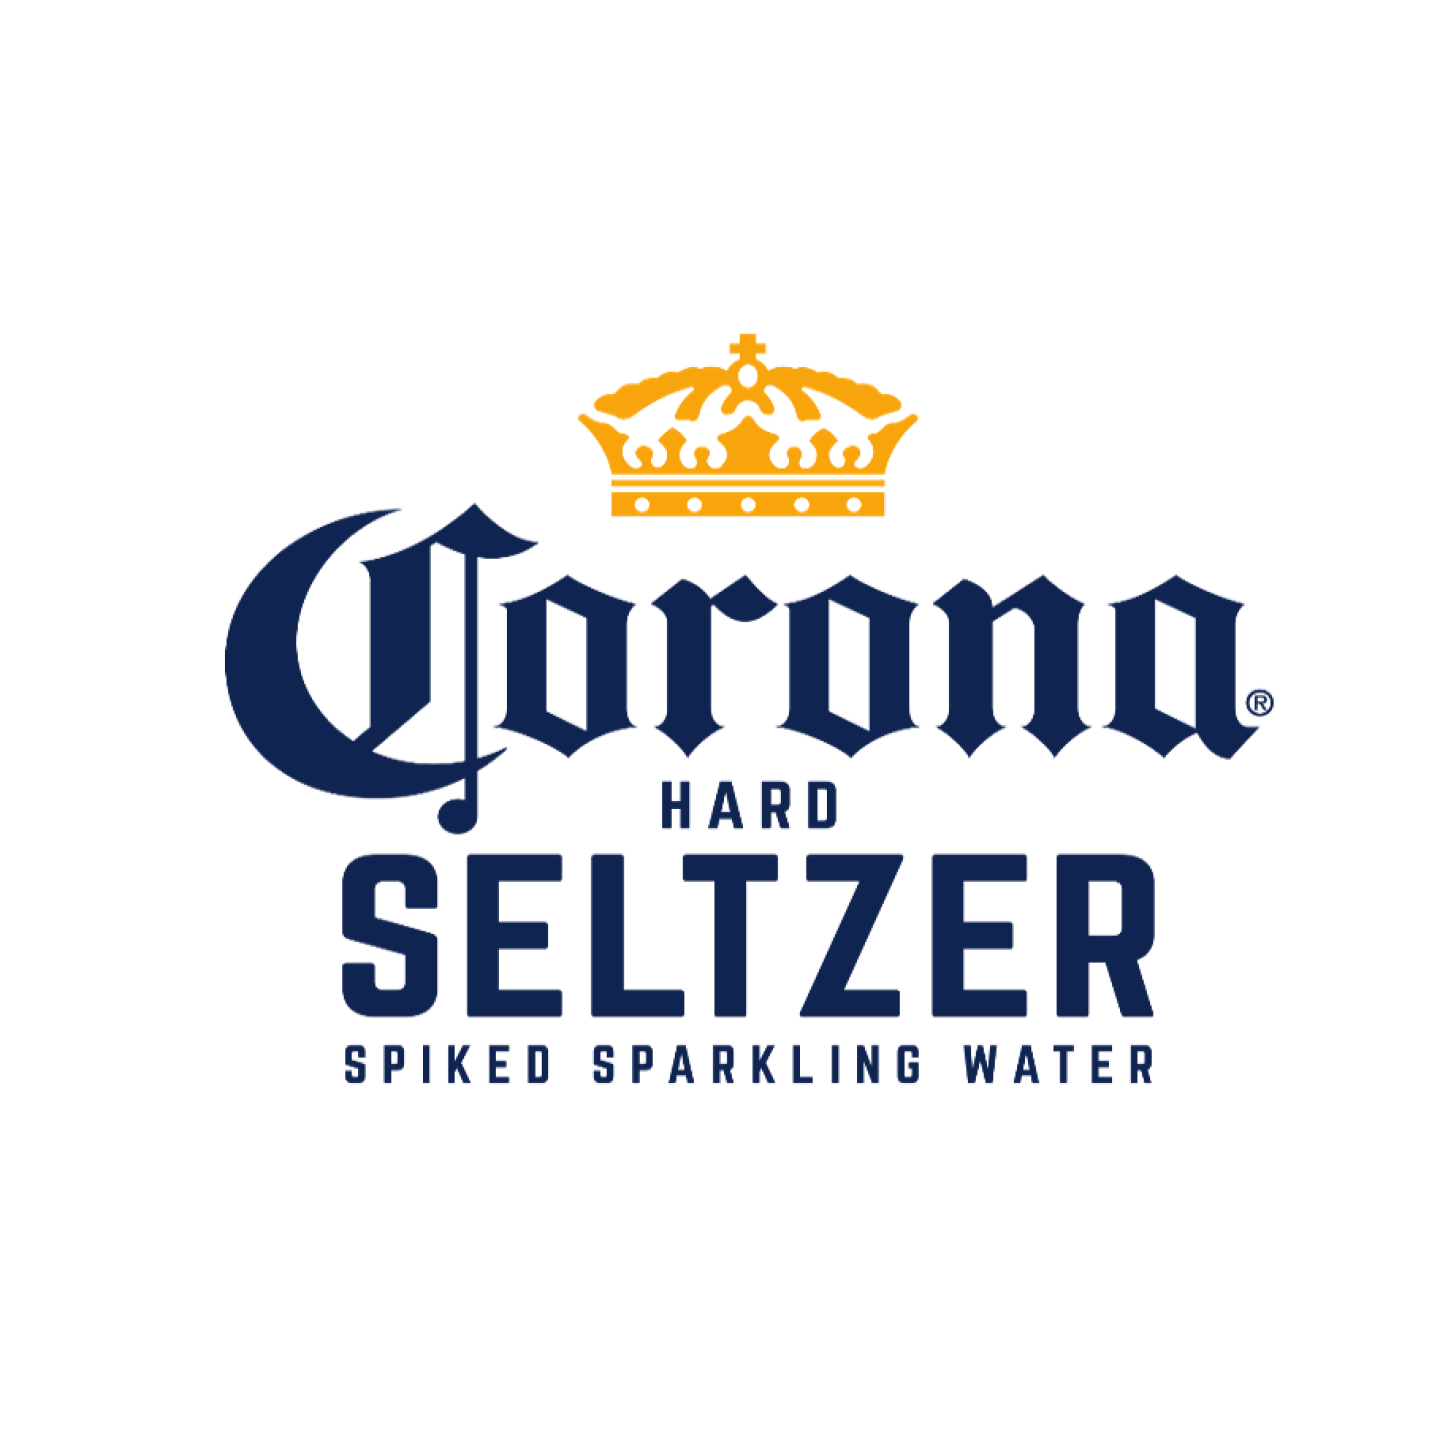 Corona Seltzer Image 1